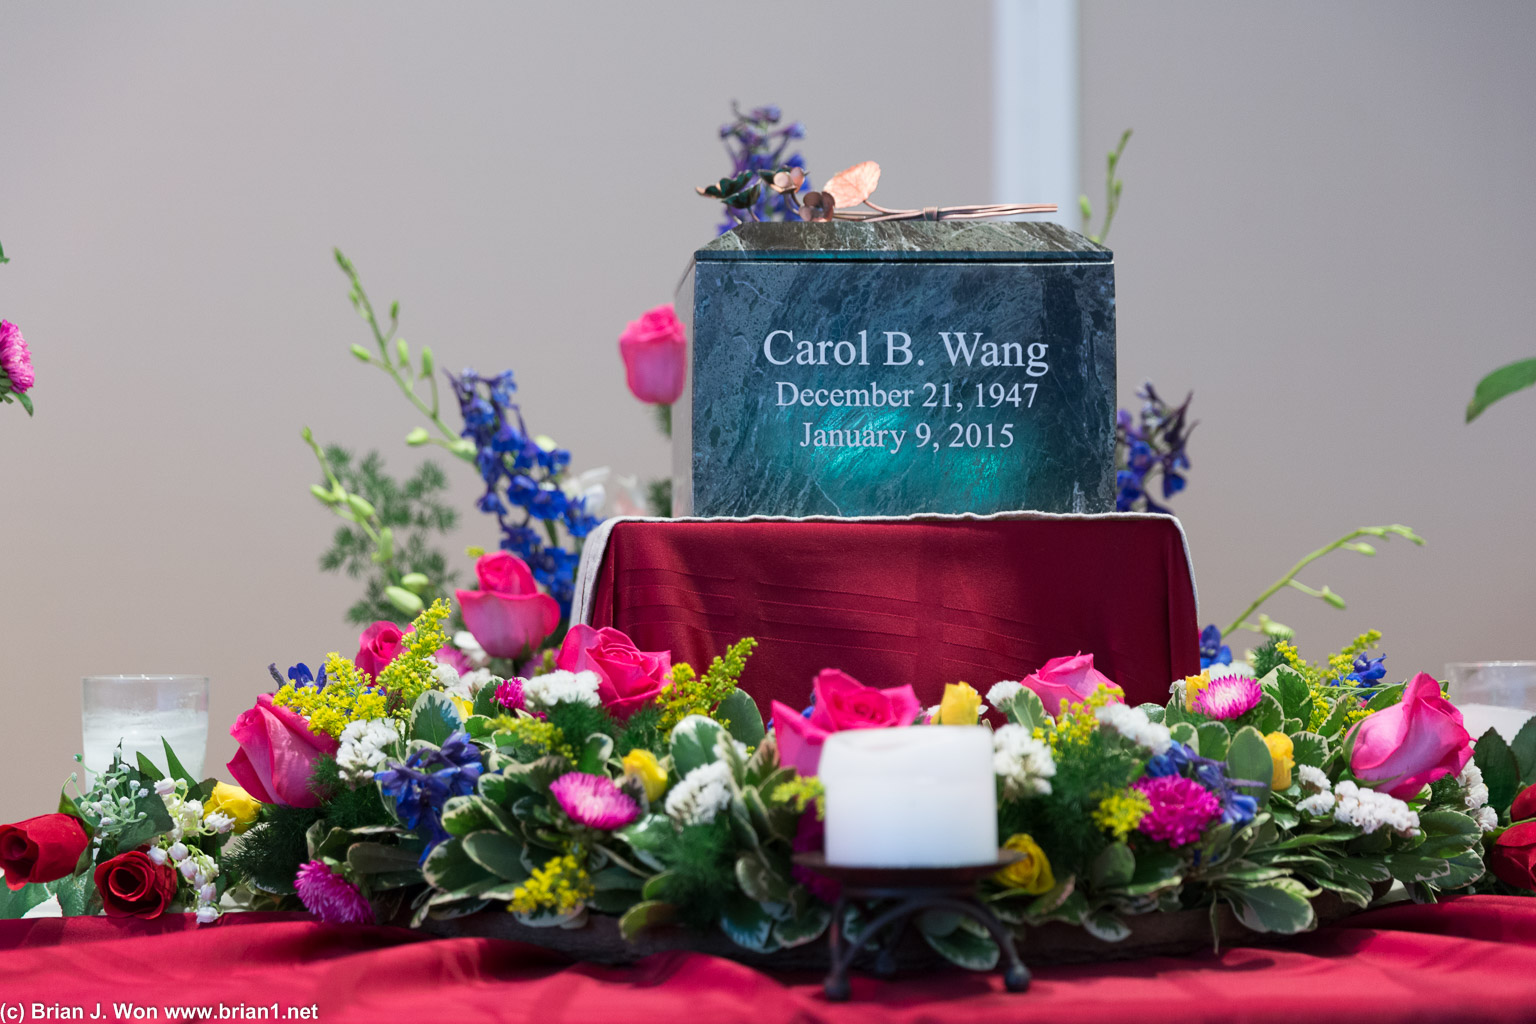 Carol B. Wang, December 21, 1947 - January 9, 2015.